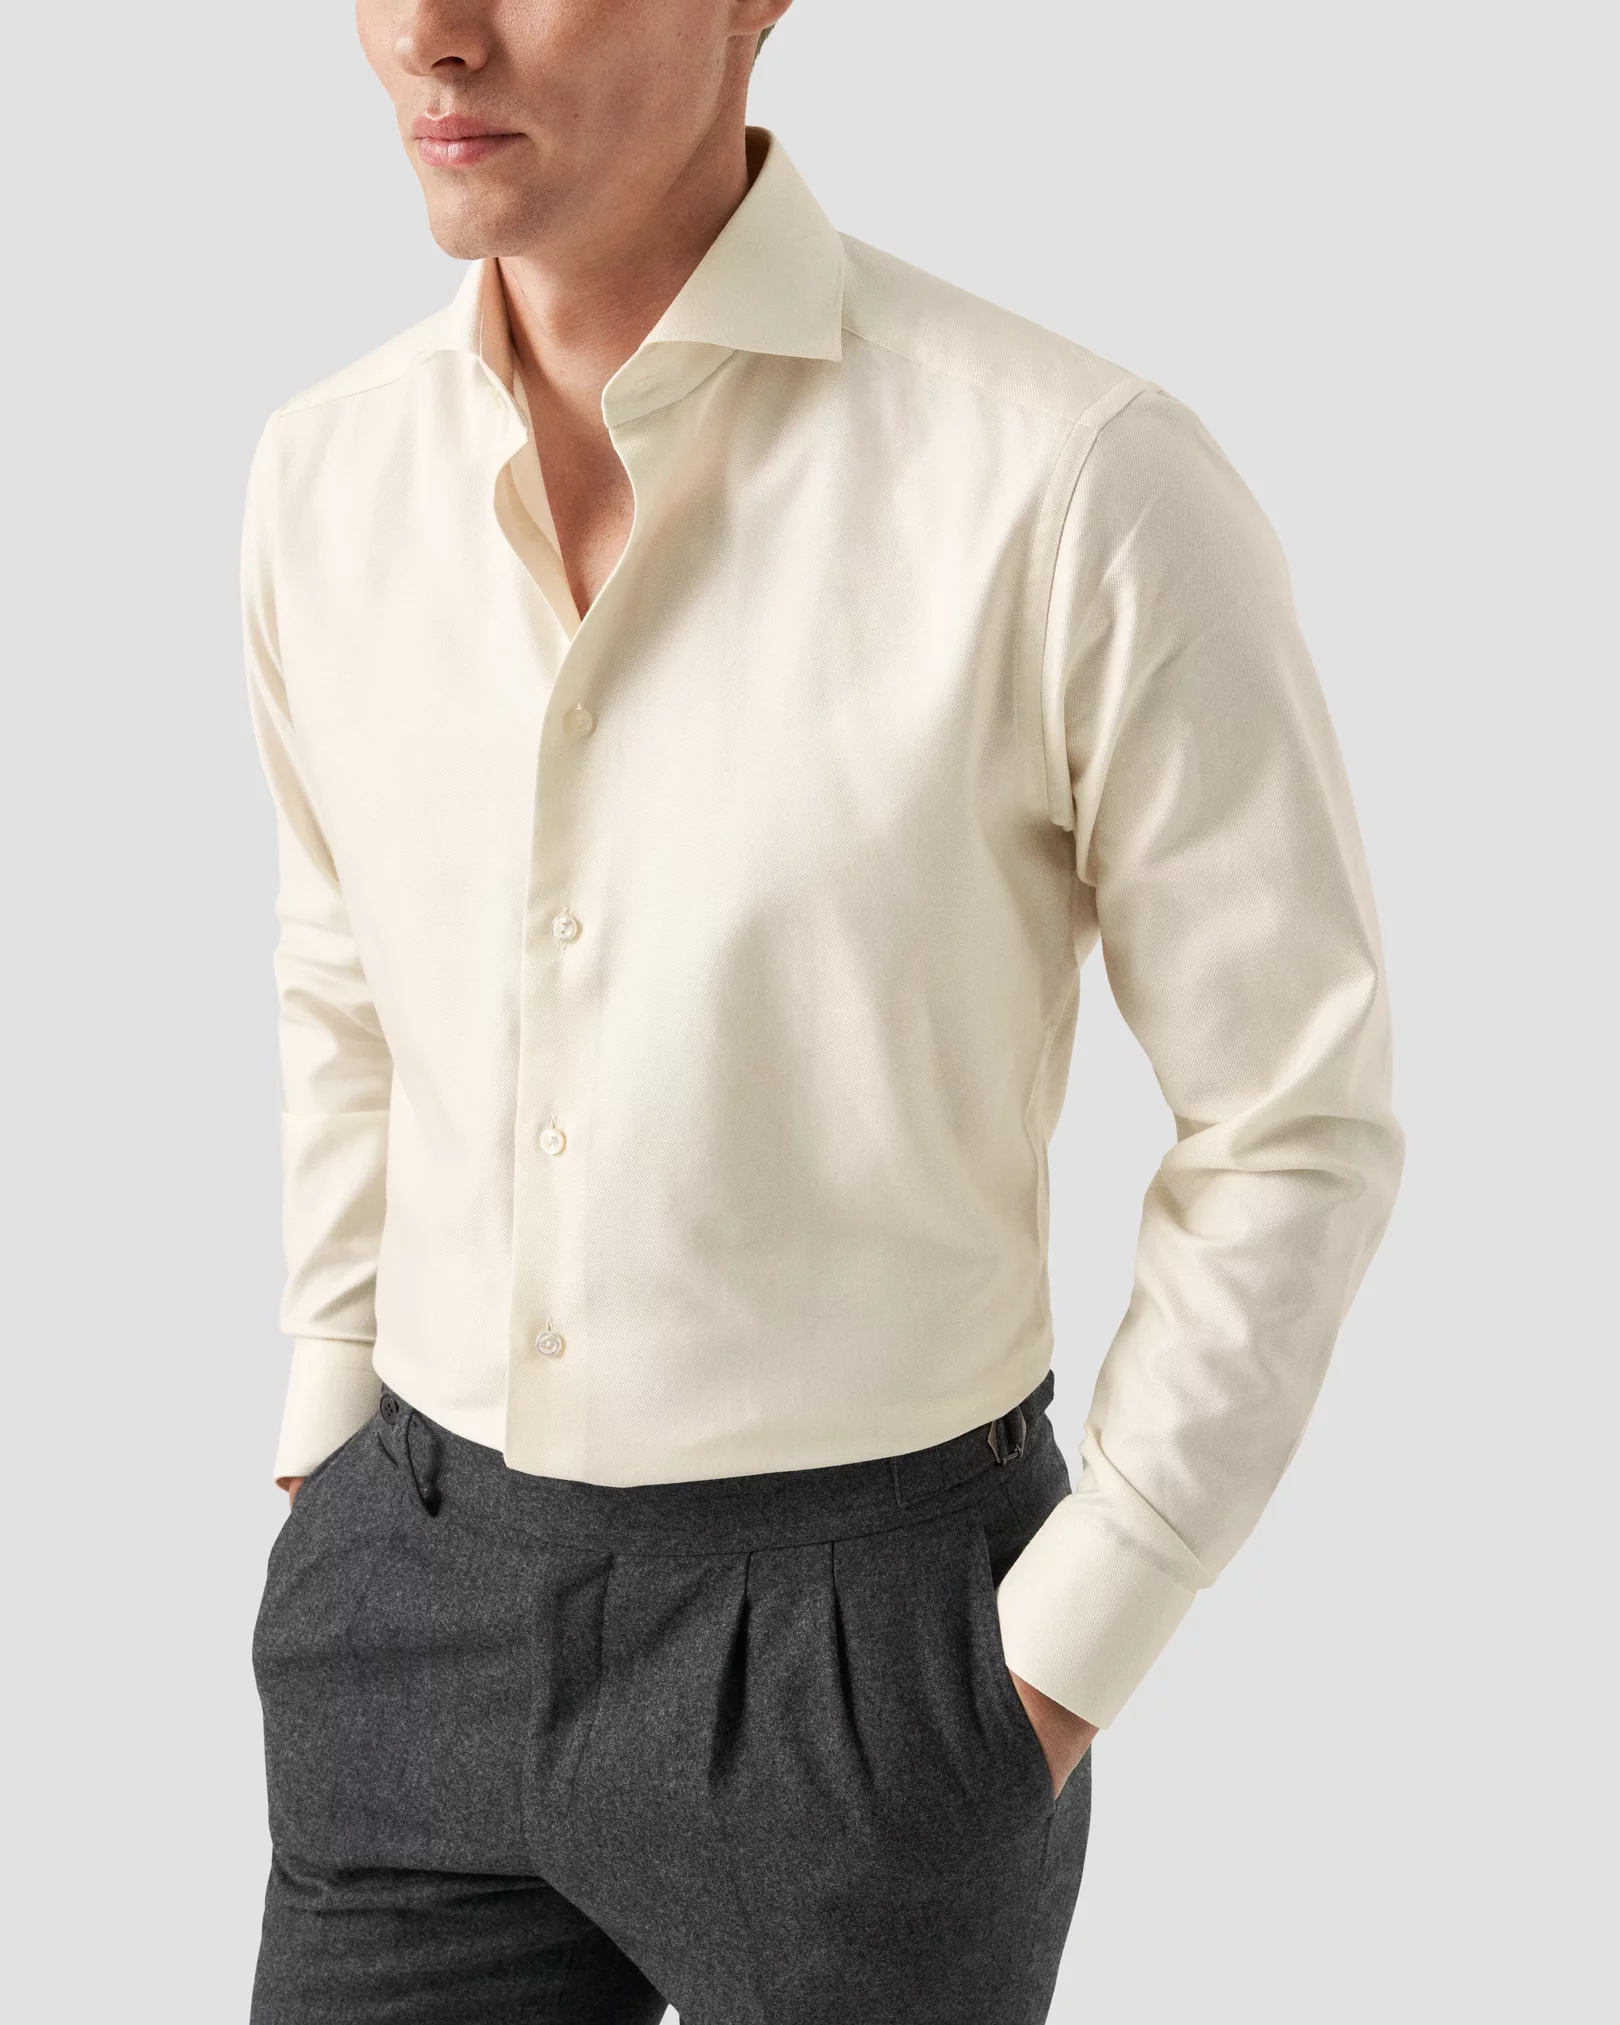 Eton - white cotton silk cashmere